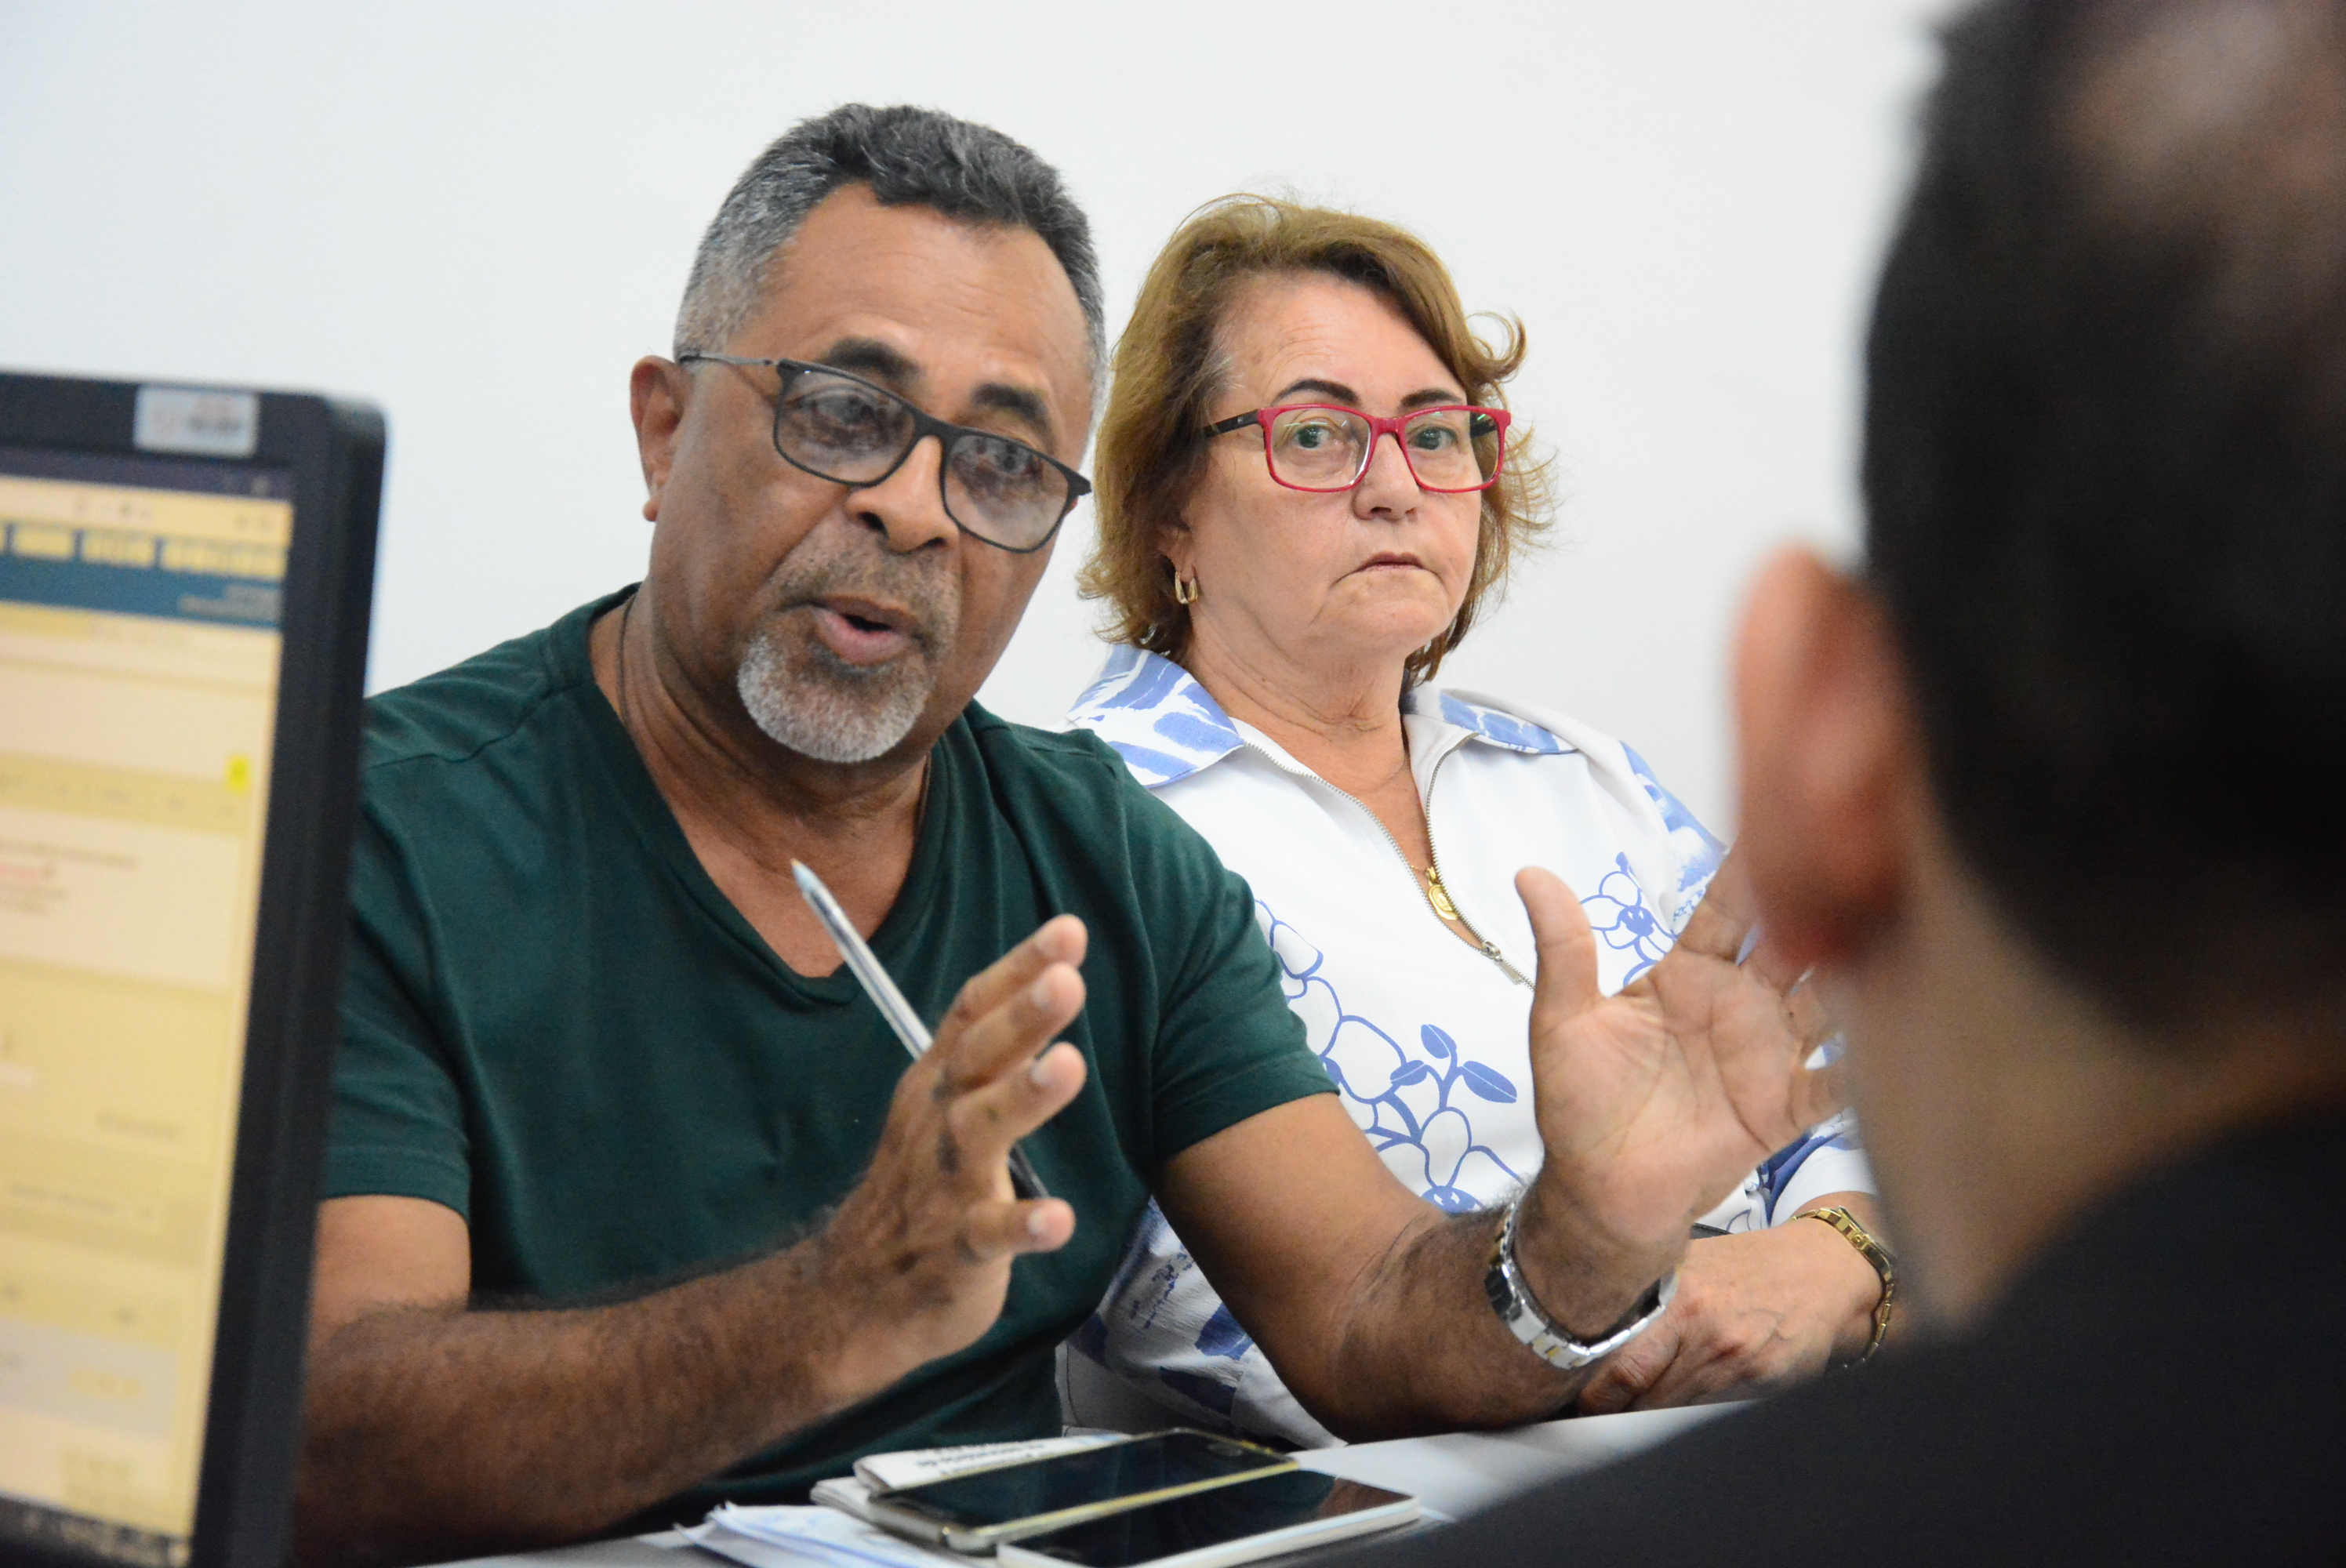 Seminário de Grãos promove integração da cadeia produtiva em Alagoas